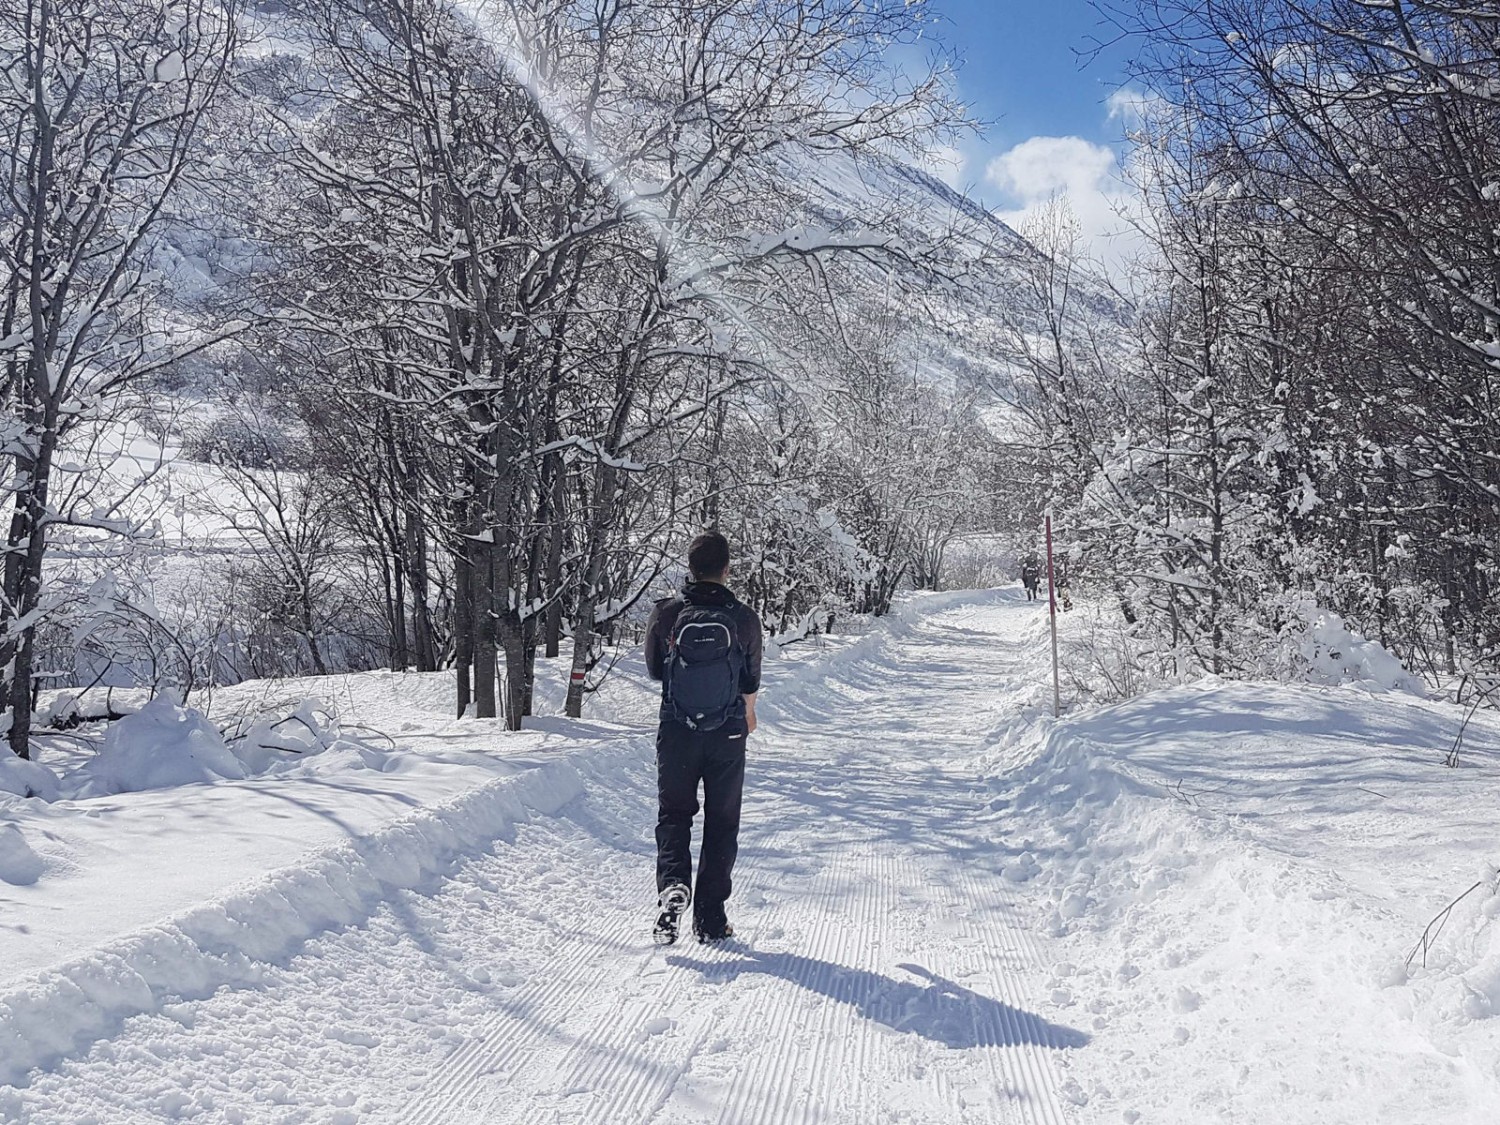 Chemin de randonnée hivernale en direction de Realp. Photo: Laura Riedi